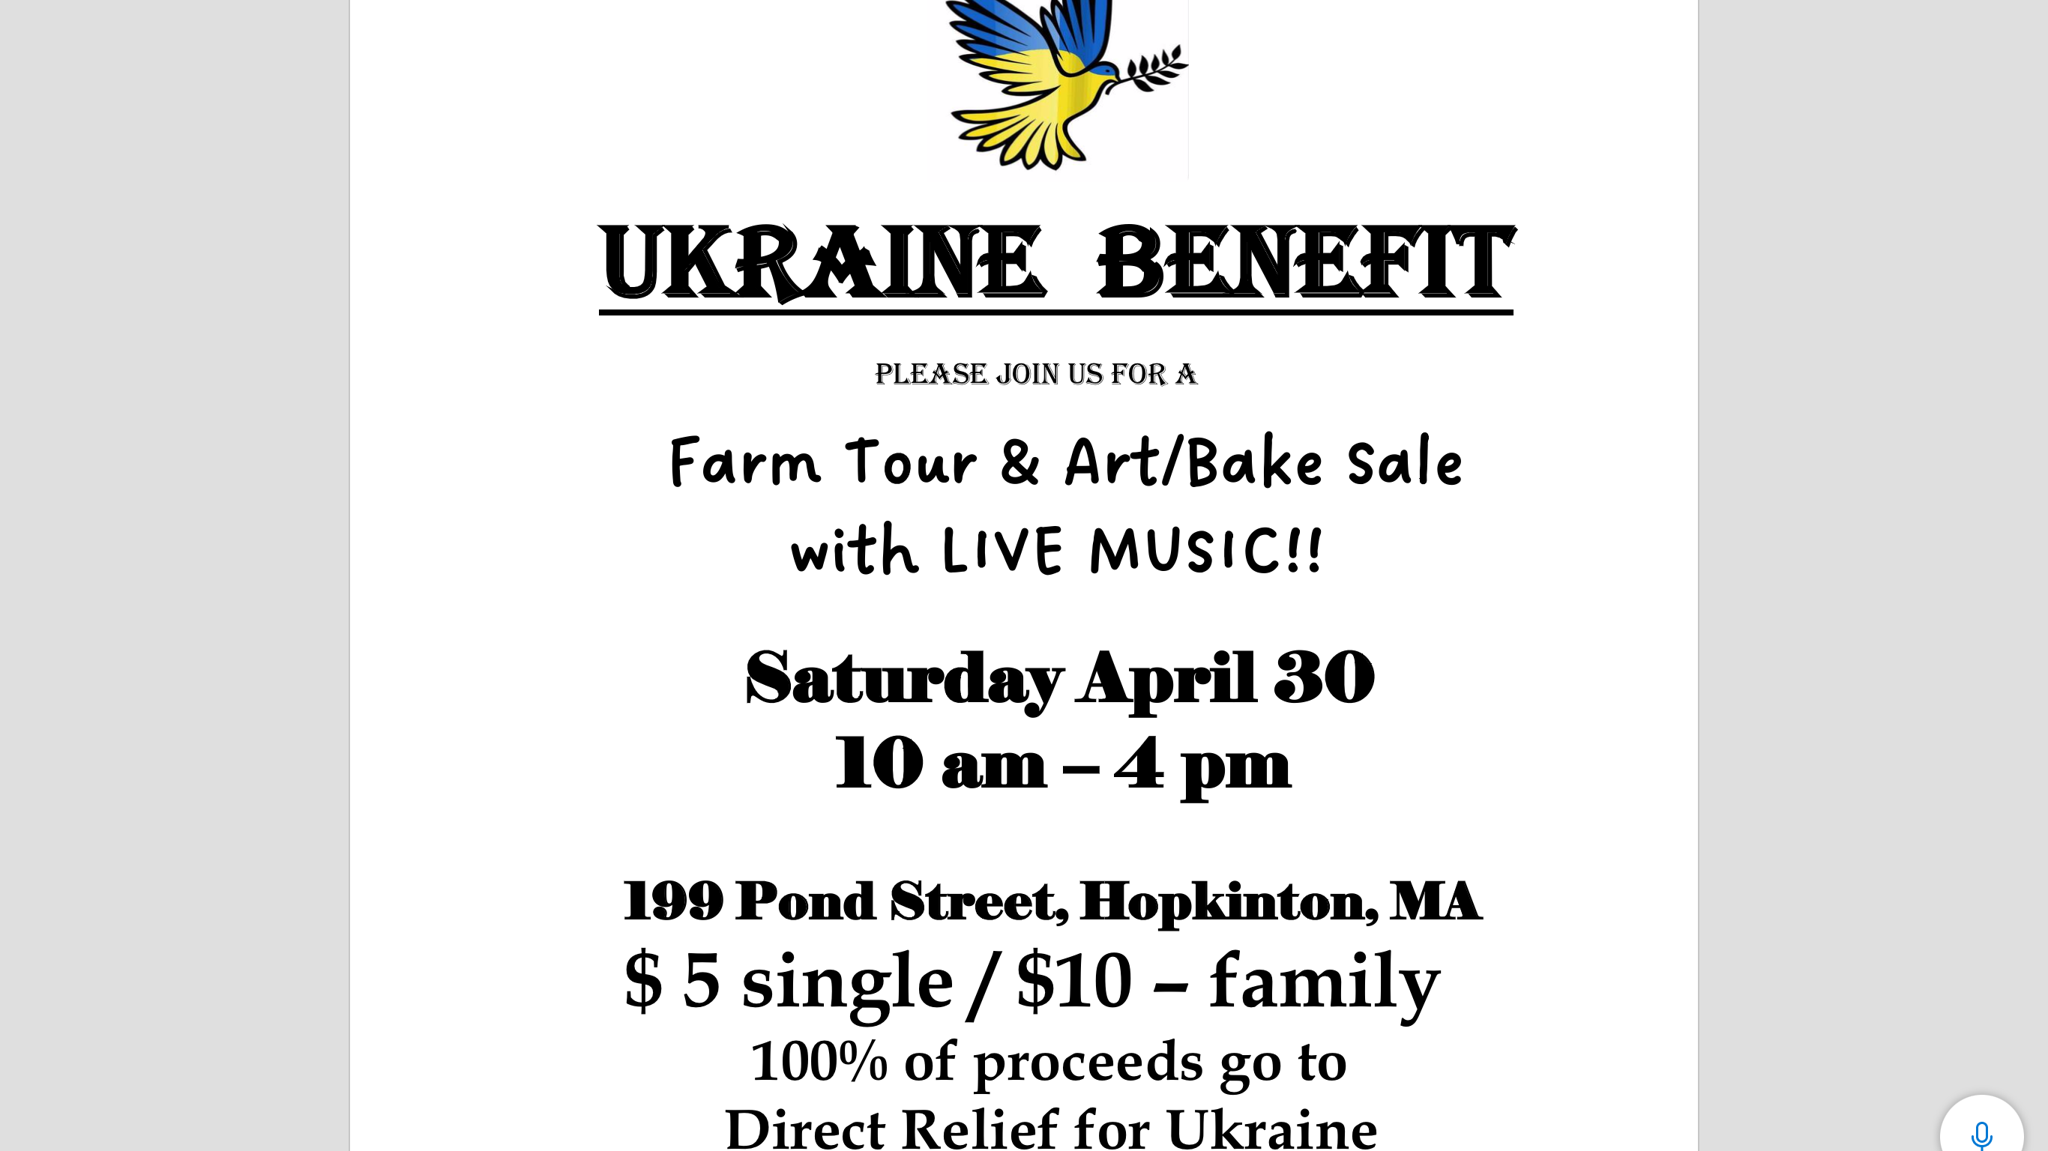 Ukraine benefit at local farm April 30